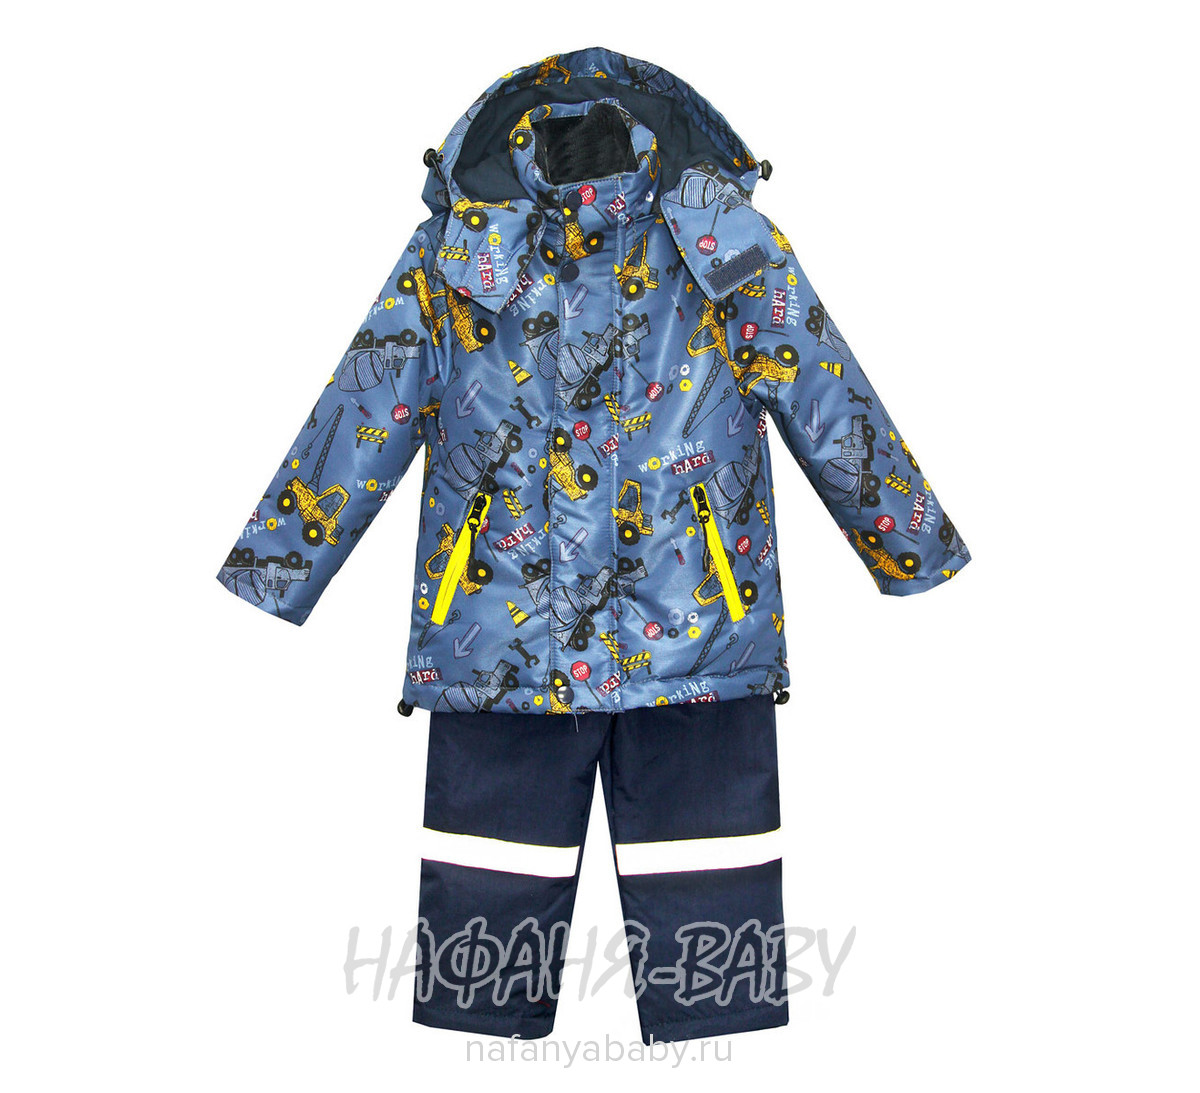 Детский костюм BOTCHKOVA арт: 883, 1-4 года, 5-9 лет, цвет куртка серый, полукомбинезон темно-синий, оптом Китай (Пекин)